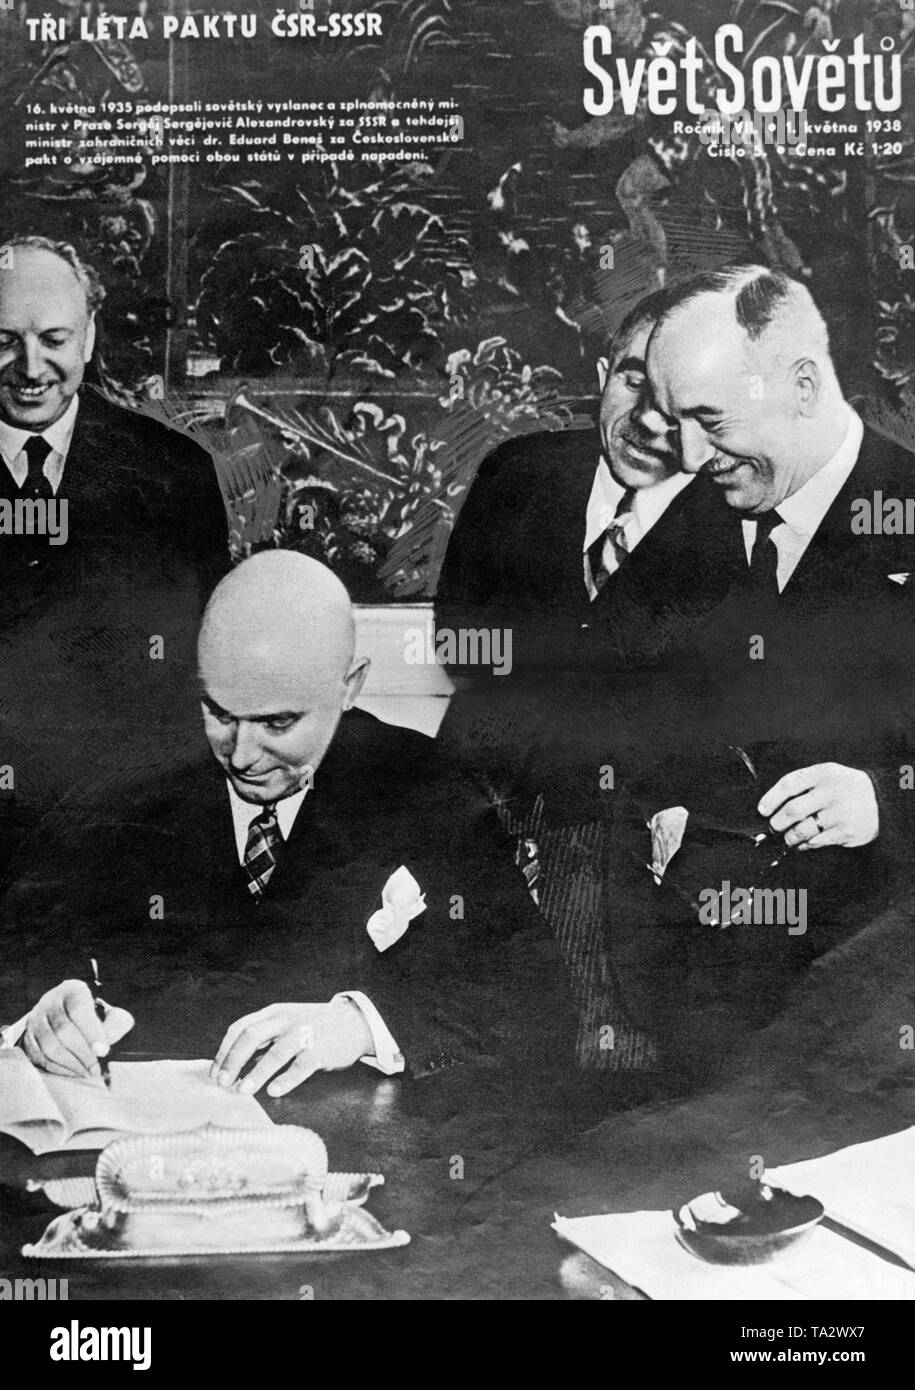 "Vet Sovetu' (un giornale cecoslovacco) illustra la firma del contratto tra la Cecoslovacchia e l'Unione Sovietica nel suo può emettere in occasione del ritorno triennale dell'evento. Foto Stock